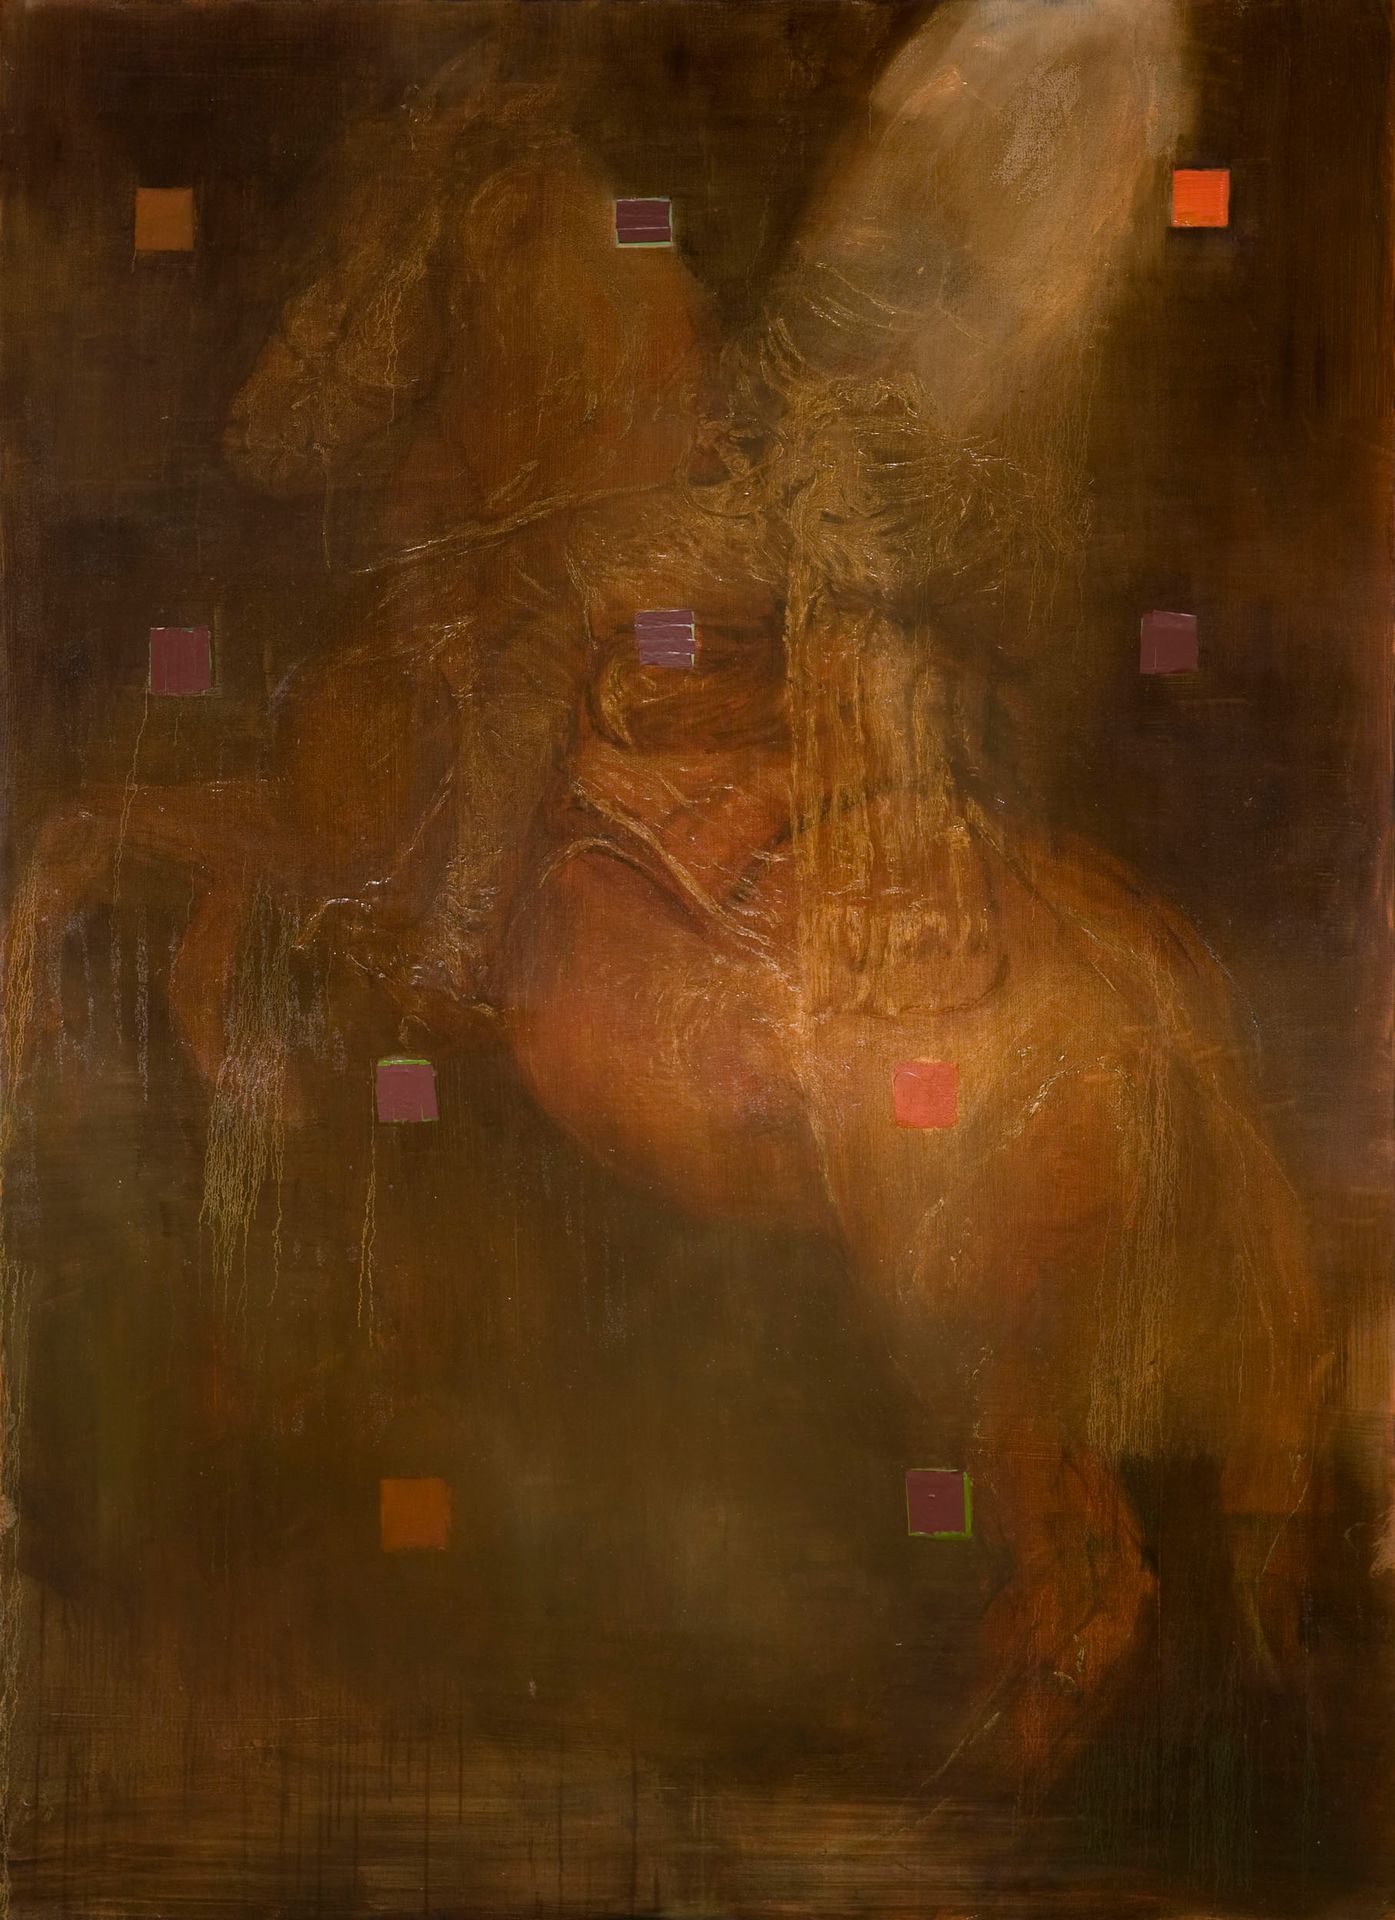 MATTHIEU RONSSE MATTHIEU RONSSE

(1981)

Le cheval en dessous brûle lourdement s&hellip;